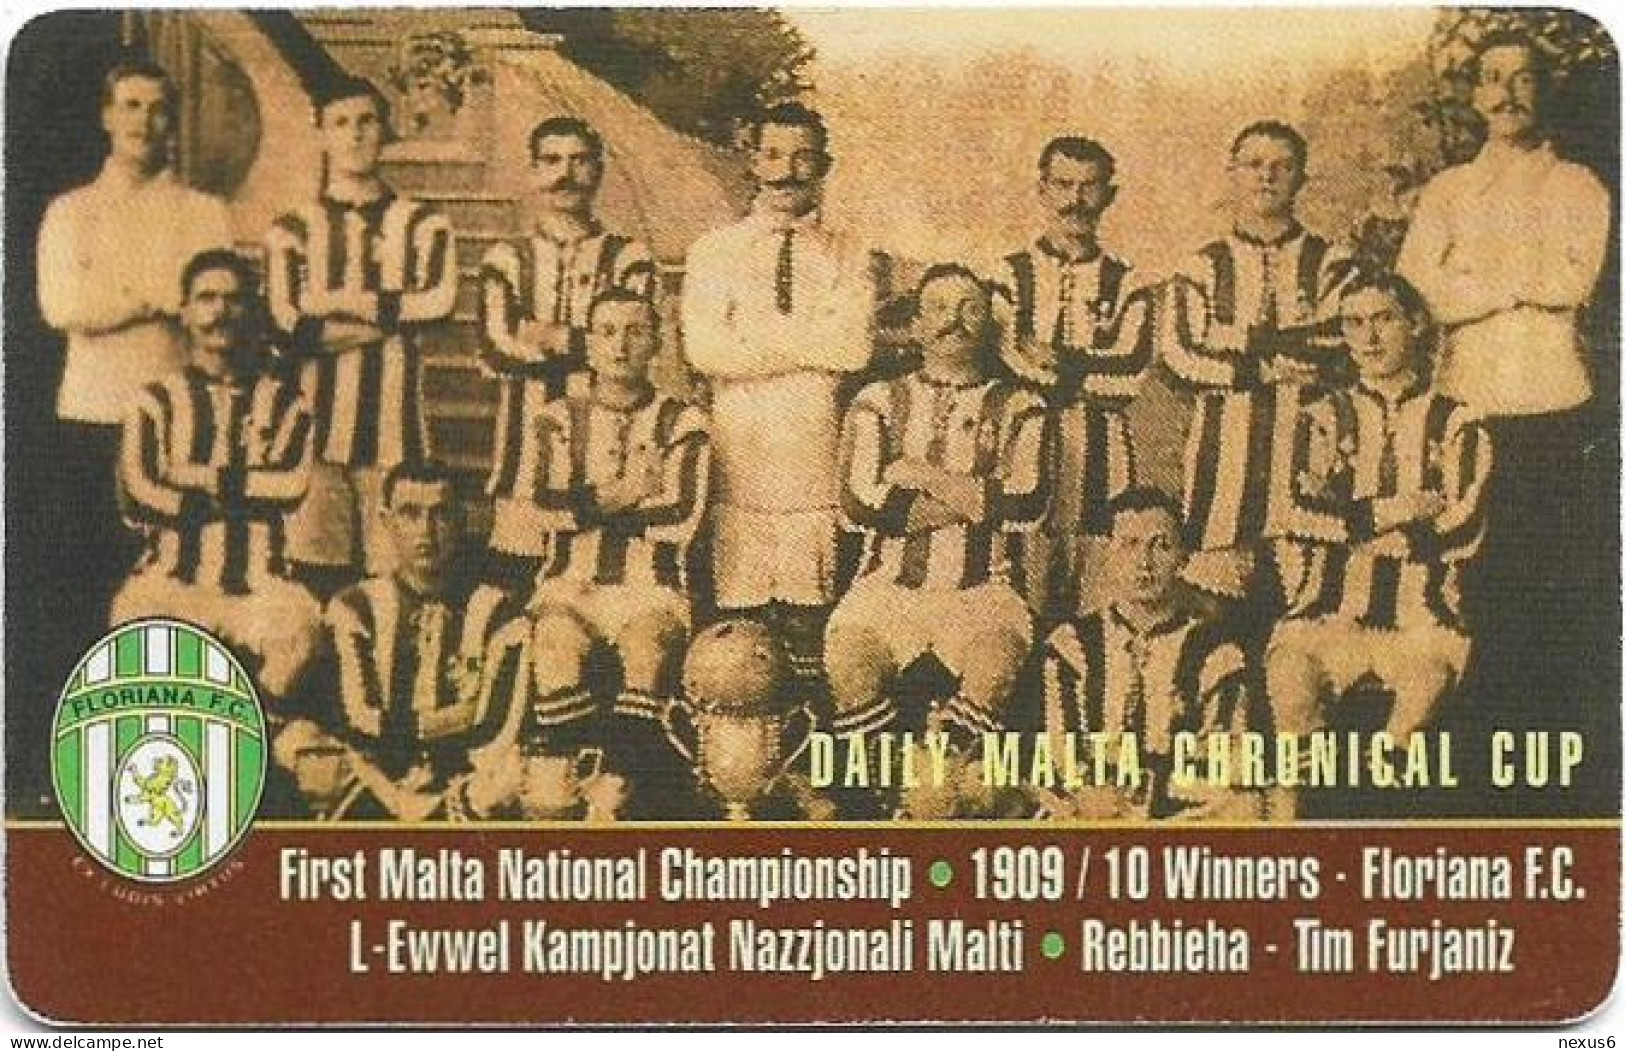 Malta - Maltacom - Floriana Football Club, 12.1999, 40U, 10.000ex, Used - Malta